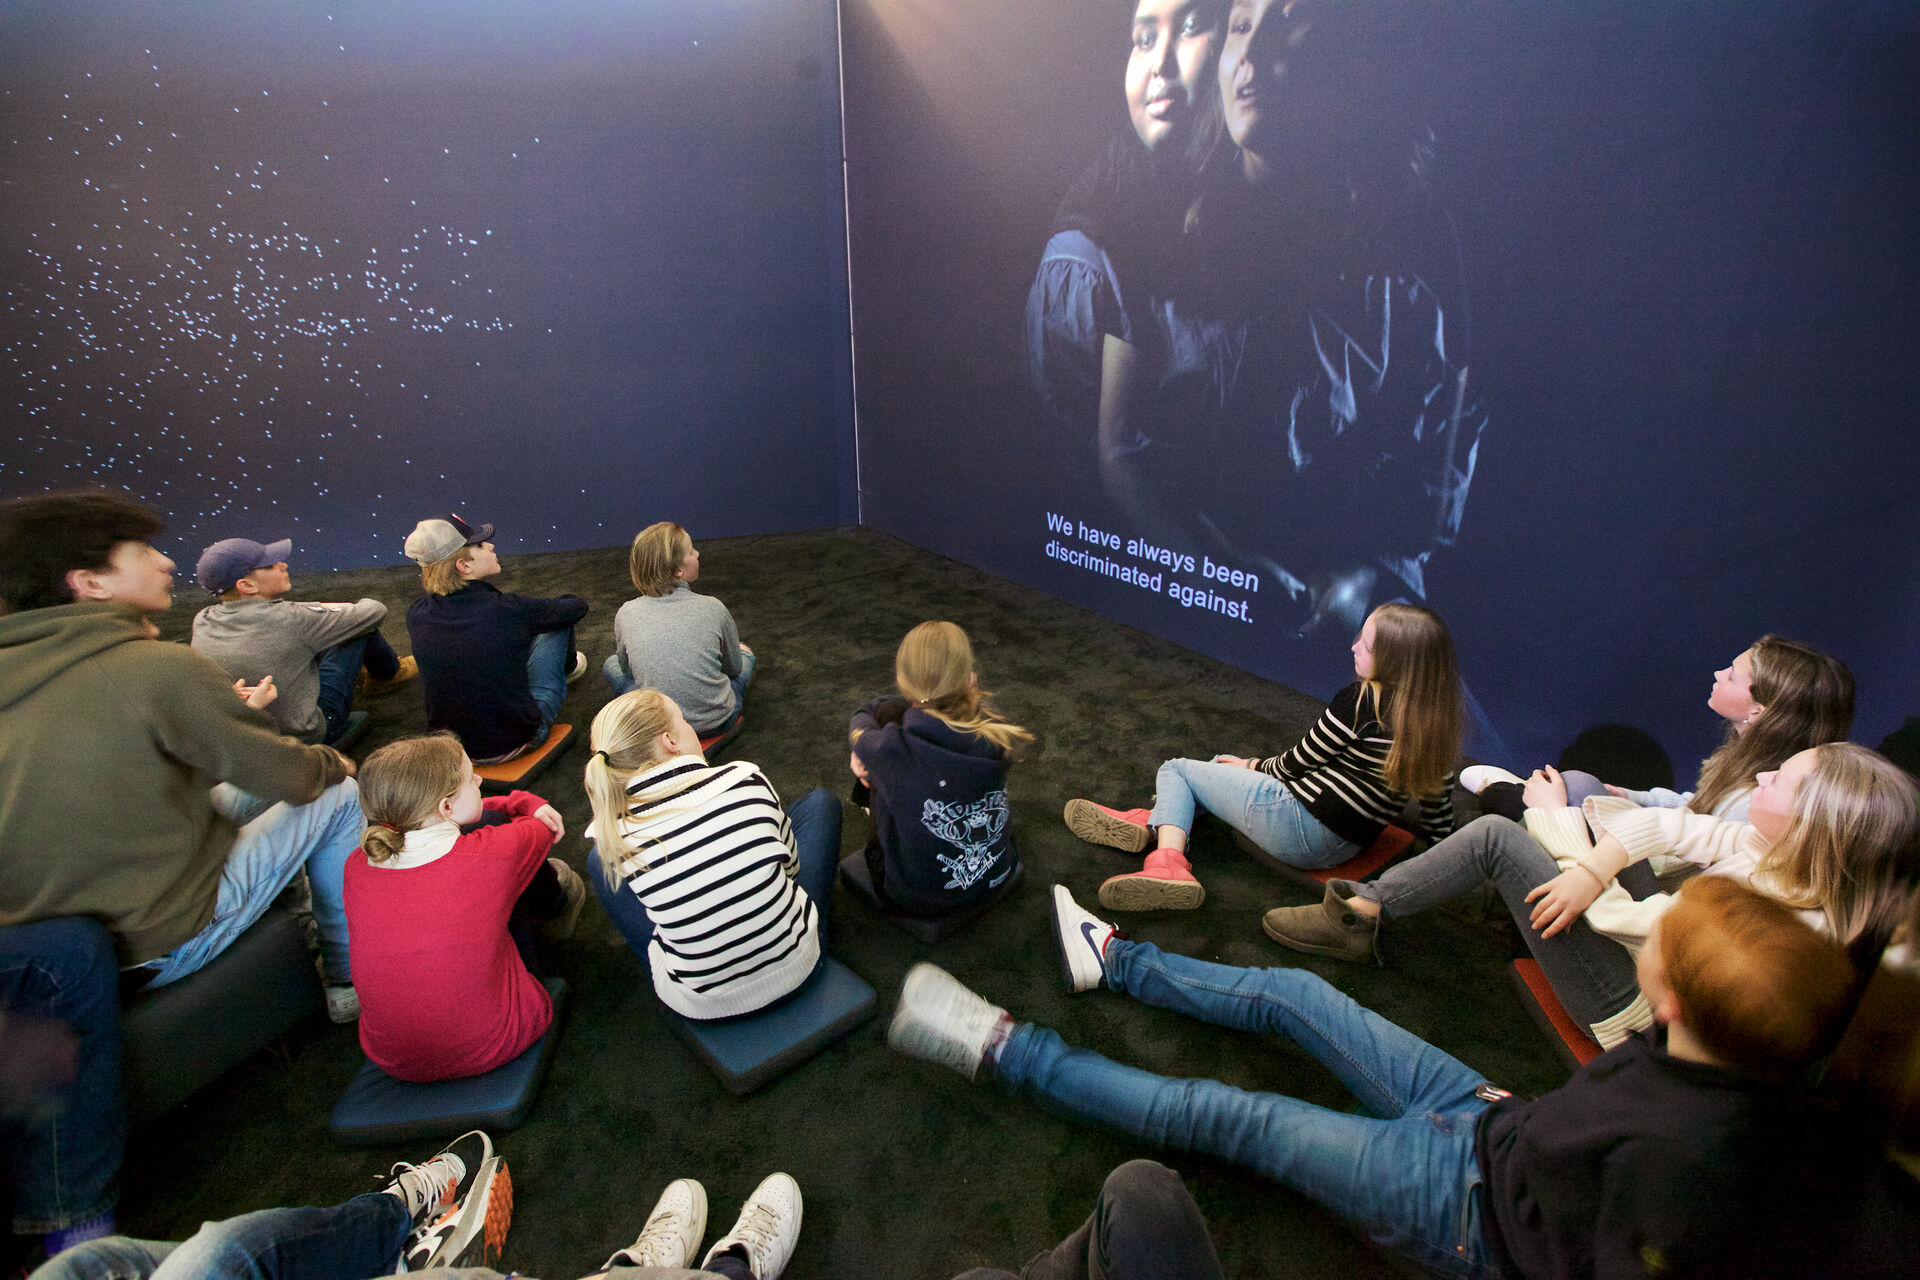 En gruppe ungdommer ser på film på en skjerm i et mørkt rom